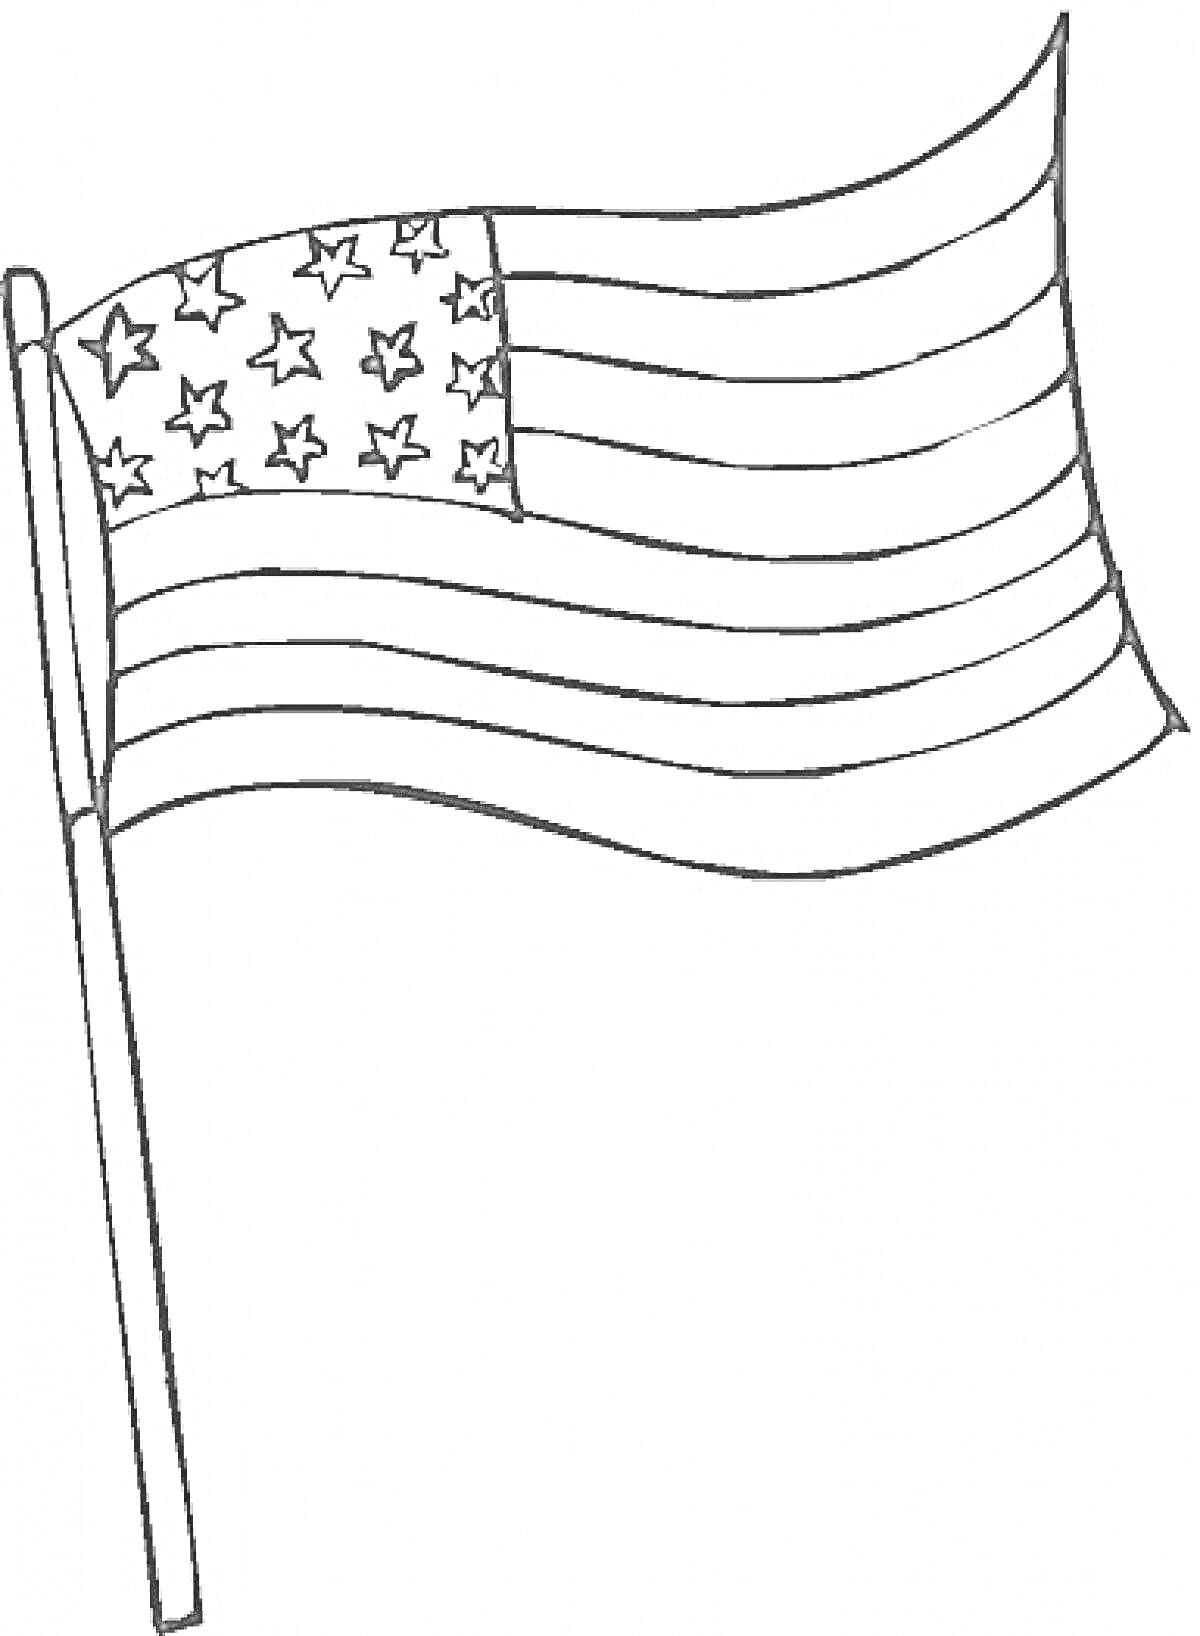 Флаг США, пятьдесят звездочек, волнистые линии